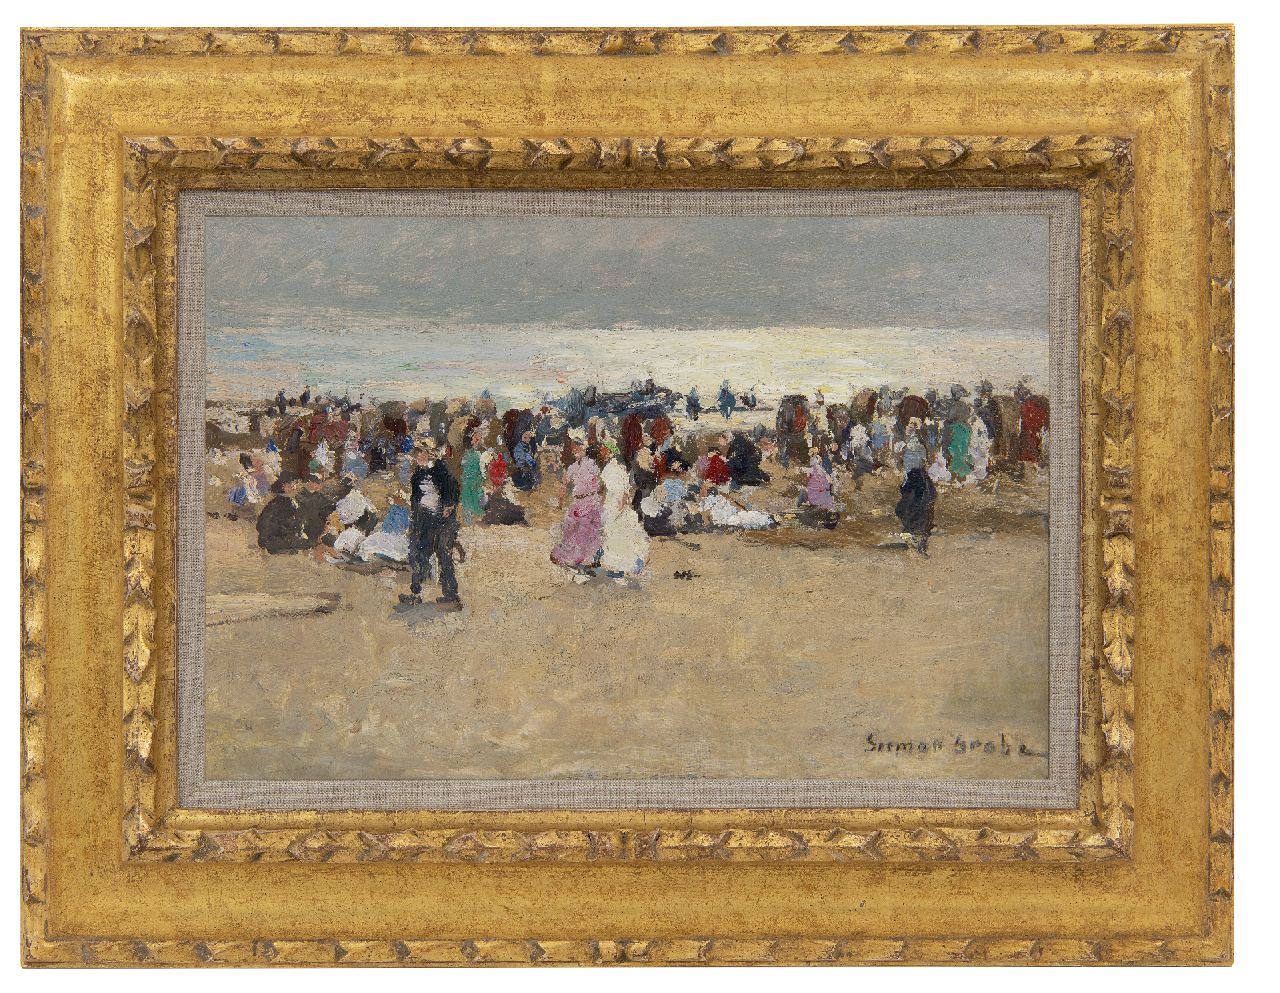 Grobe P.G.  | Philipp 'German' Grobe, Kleurrijke drukte op het strand, olieverf op paneel 23,9 x 36,0 cm, gesigneerd rechtsonder